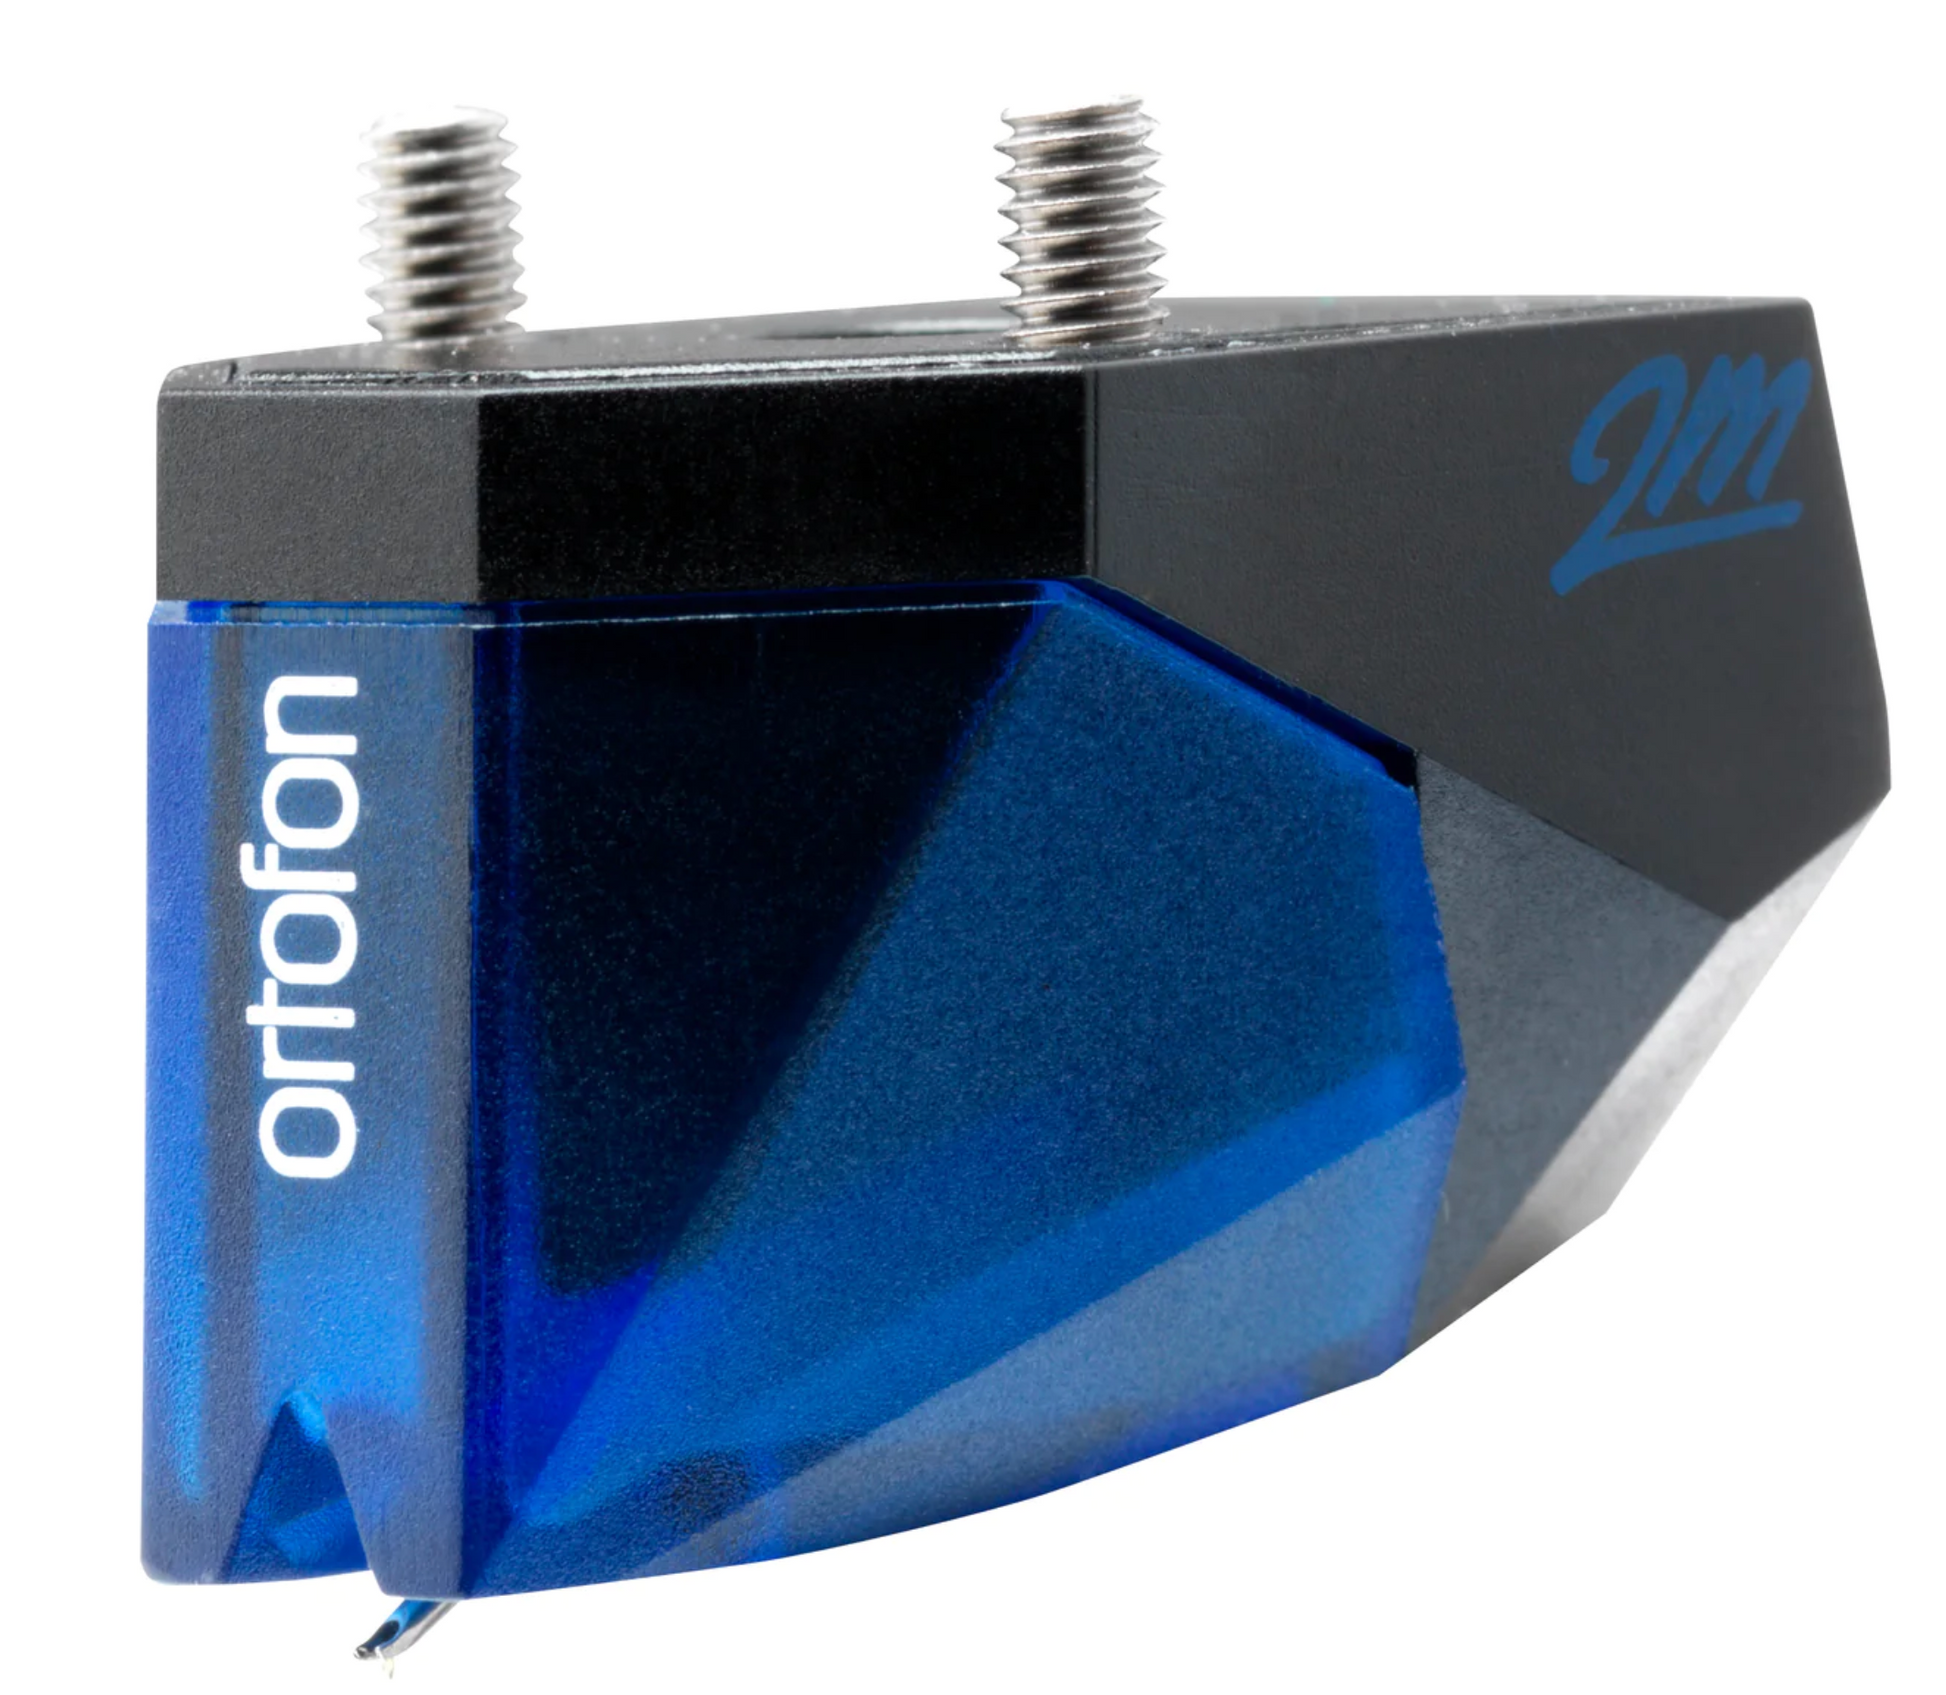 Ortofon 2M Blue cartridge with connectors